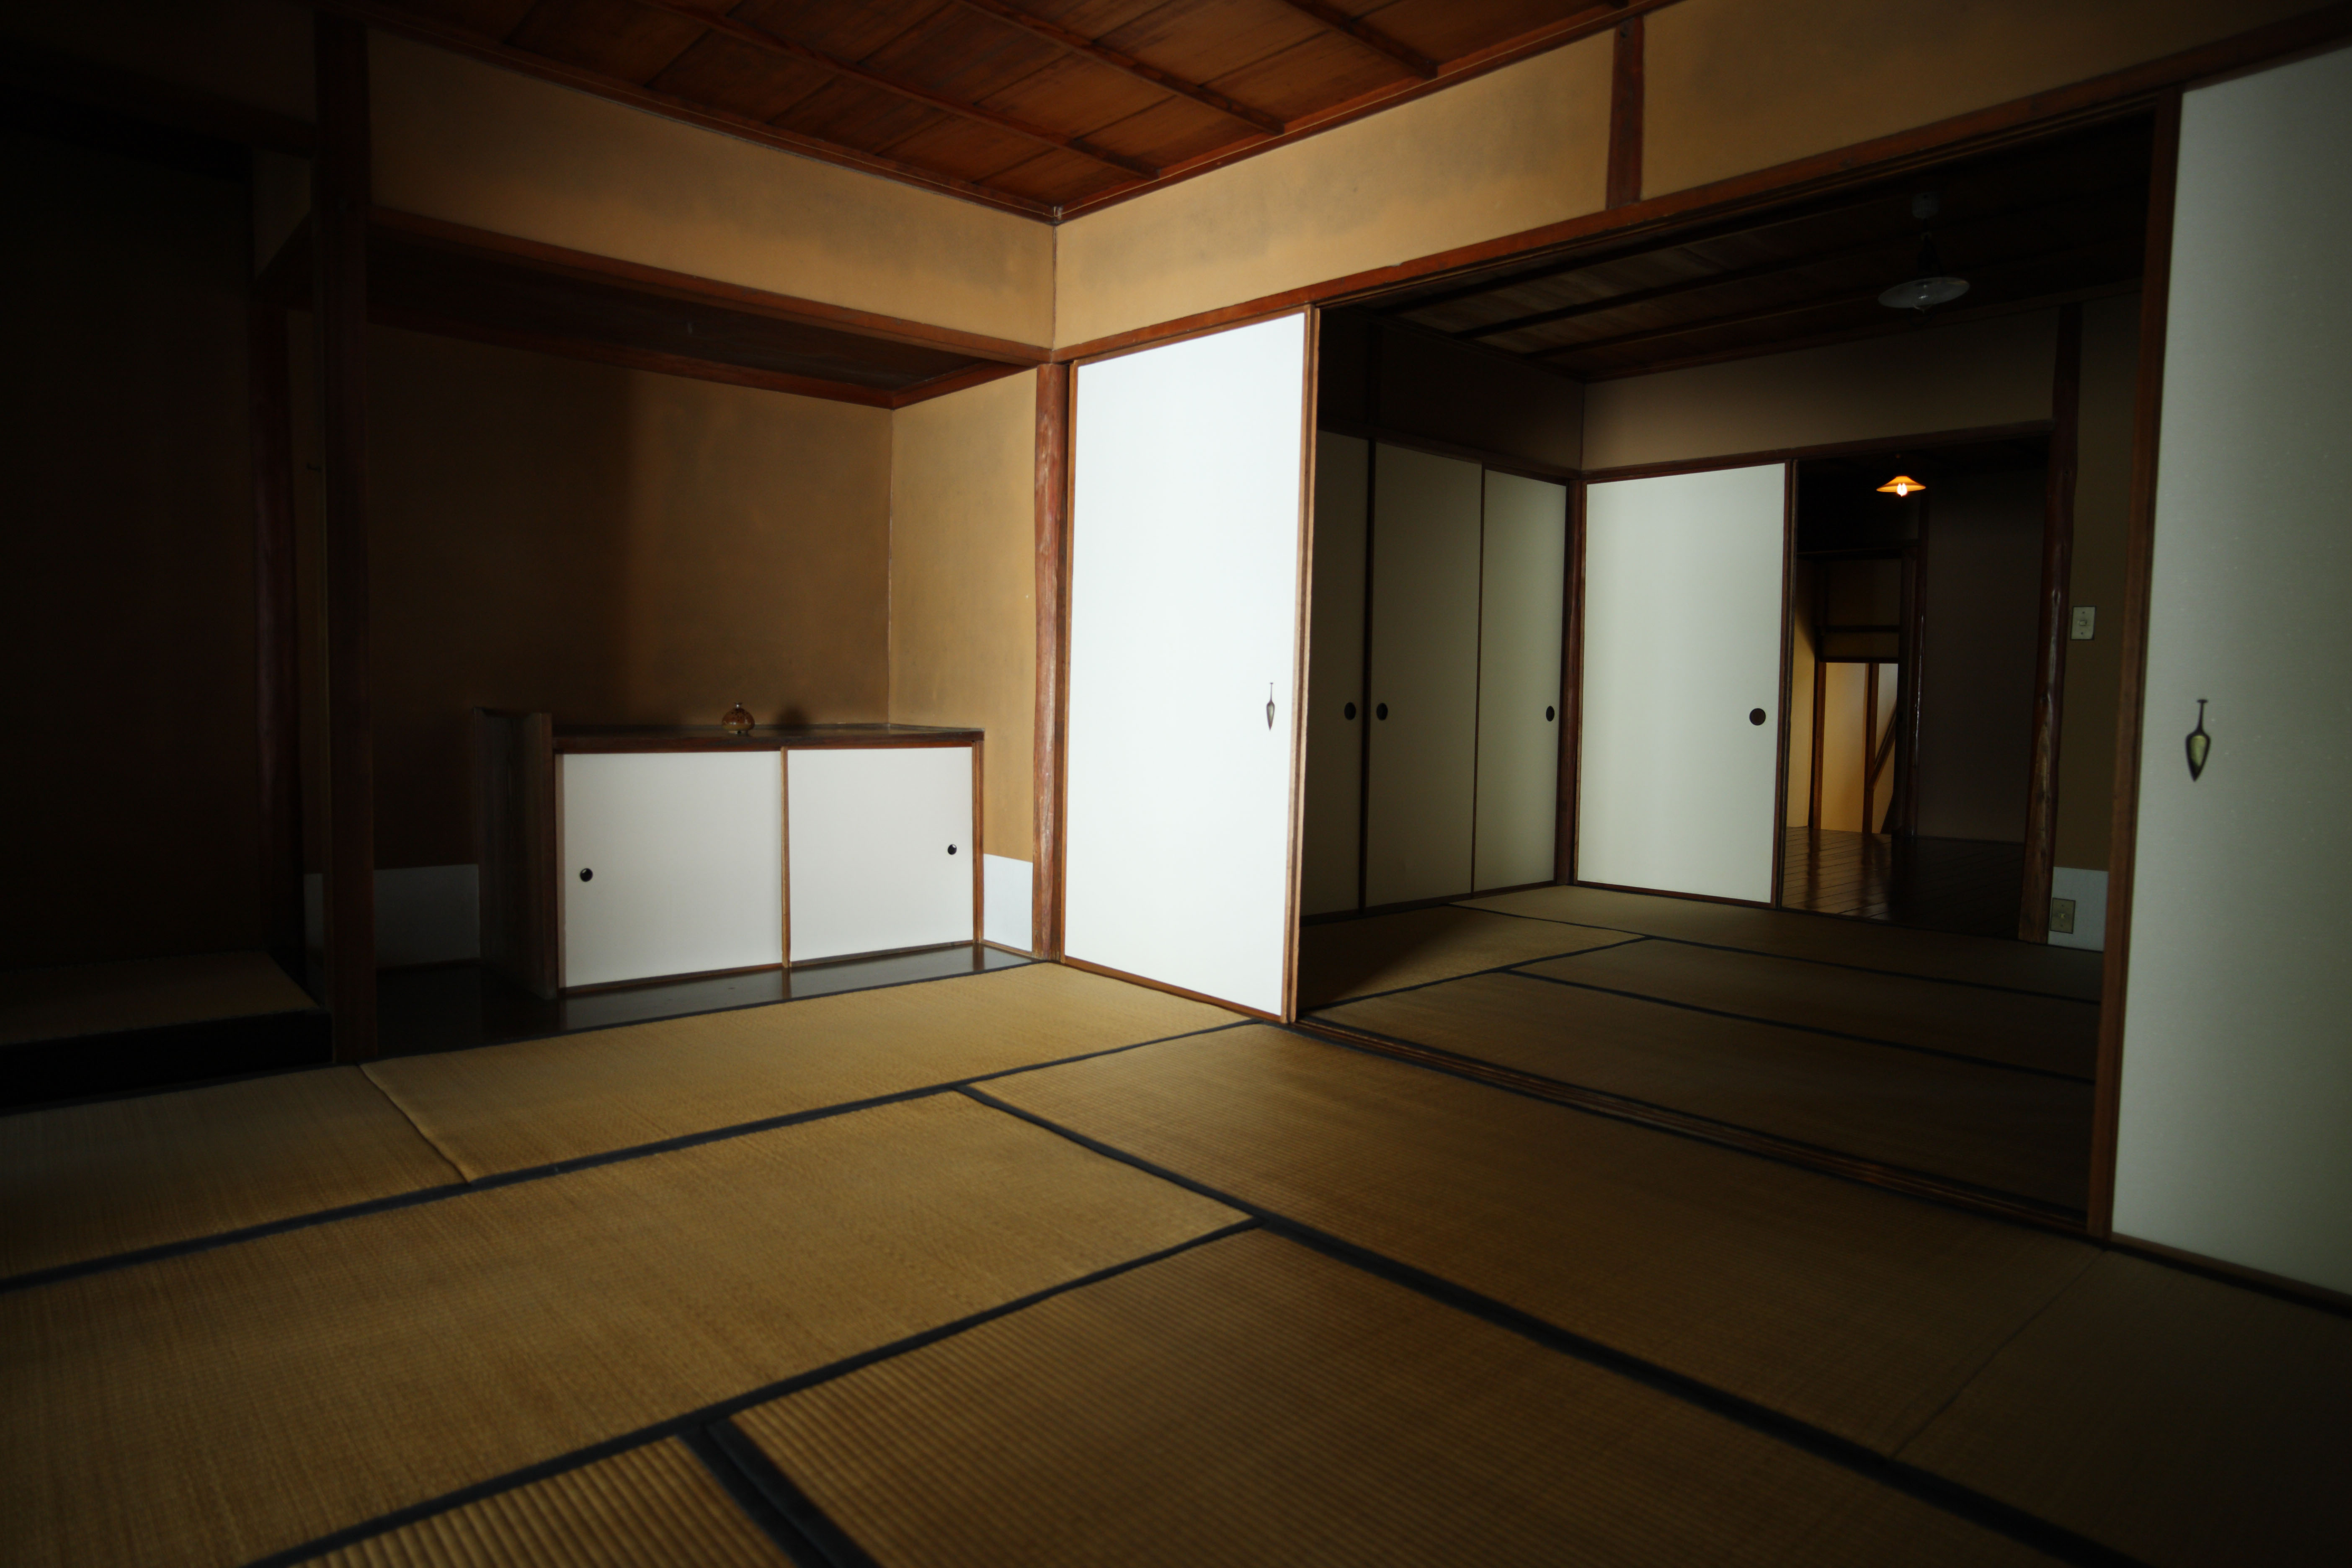 photo, la matire, libre, amnage, dcrivez, photo de la rserve,Une personne de Muse du Village de Meiji-mura maison du pin est, construire du Meiji, les tatami nattent, Pice du Japonais-style, papier-porte glissante